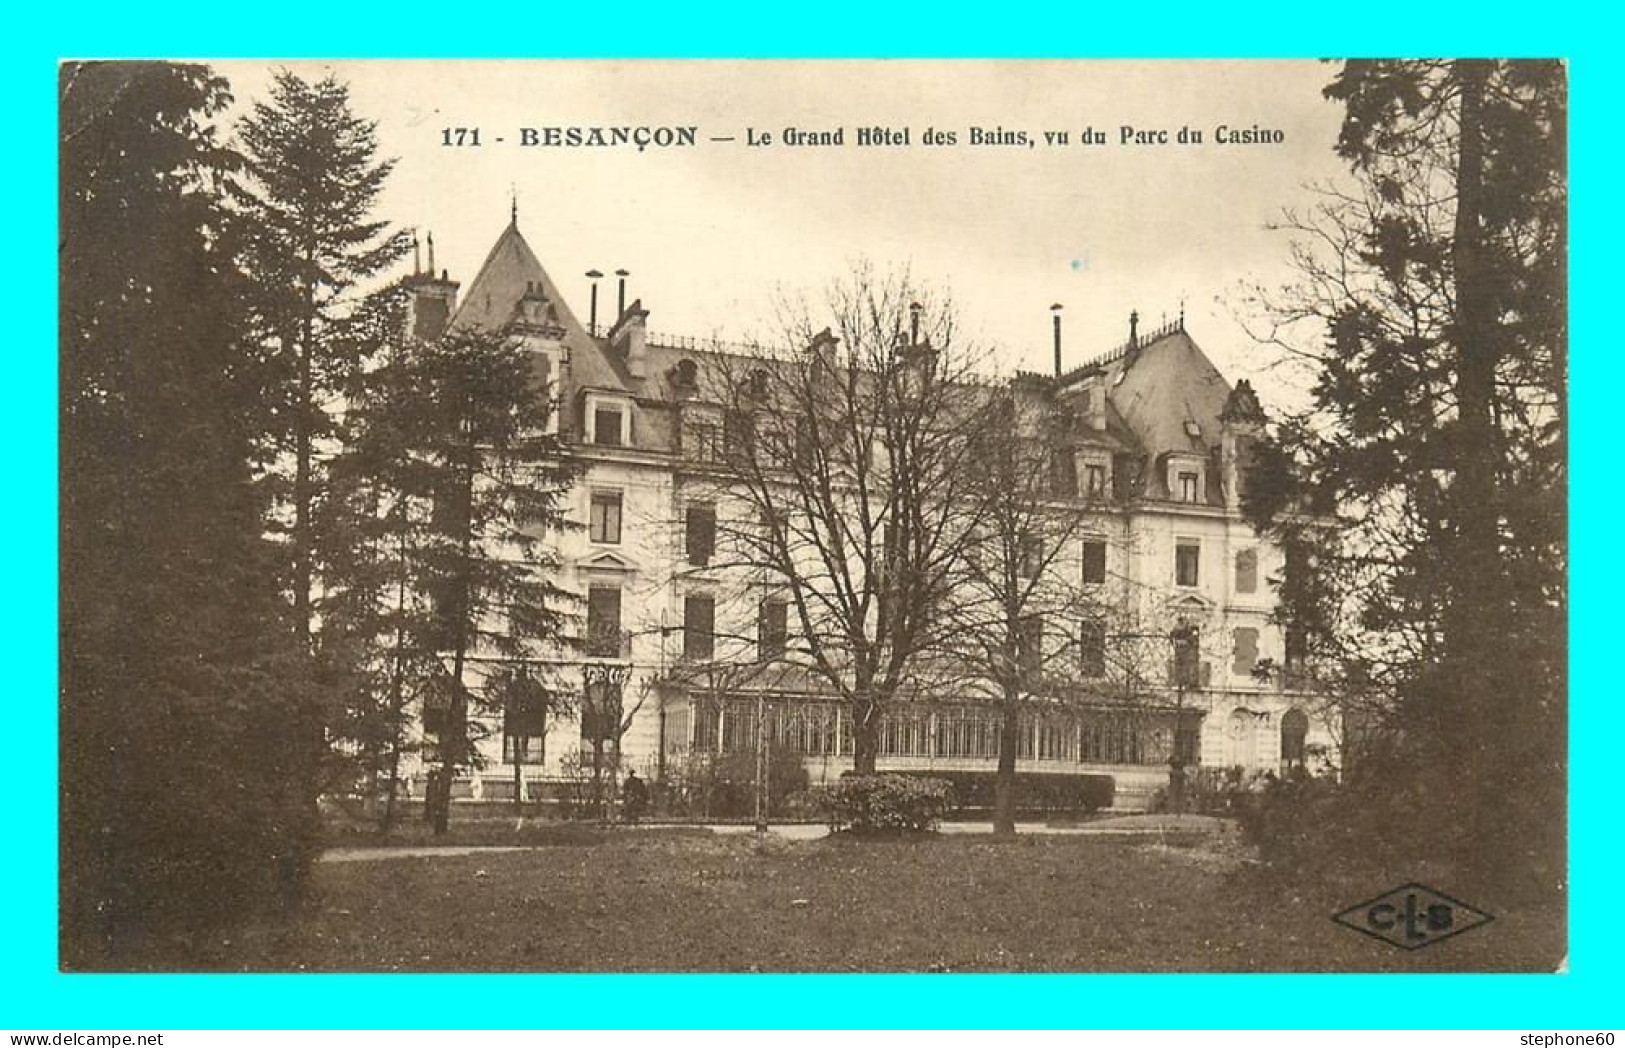 A832 / 645 25 - BESANCON Le Grand Hotel Des Bains Vu Du Parc Du Casino - Besancon